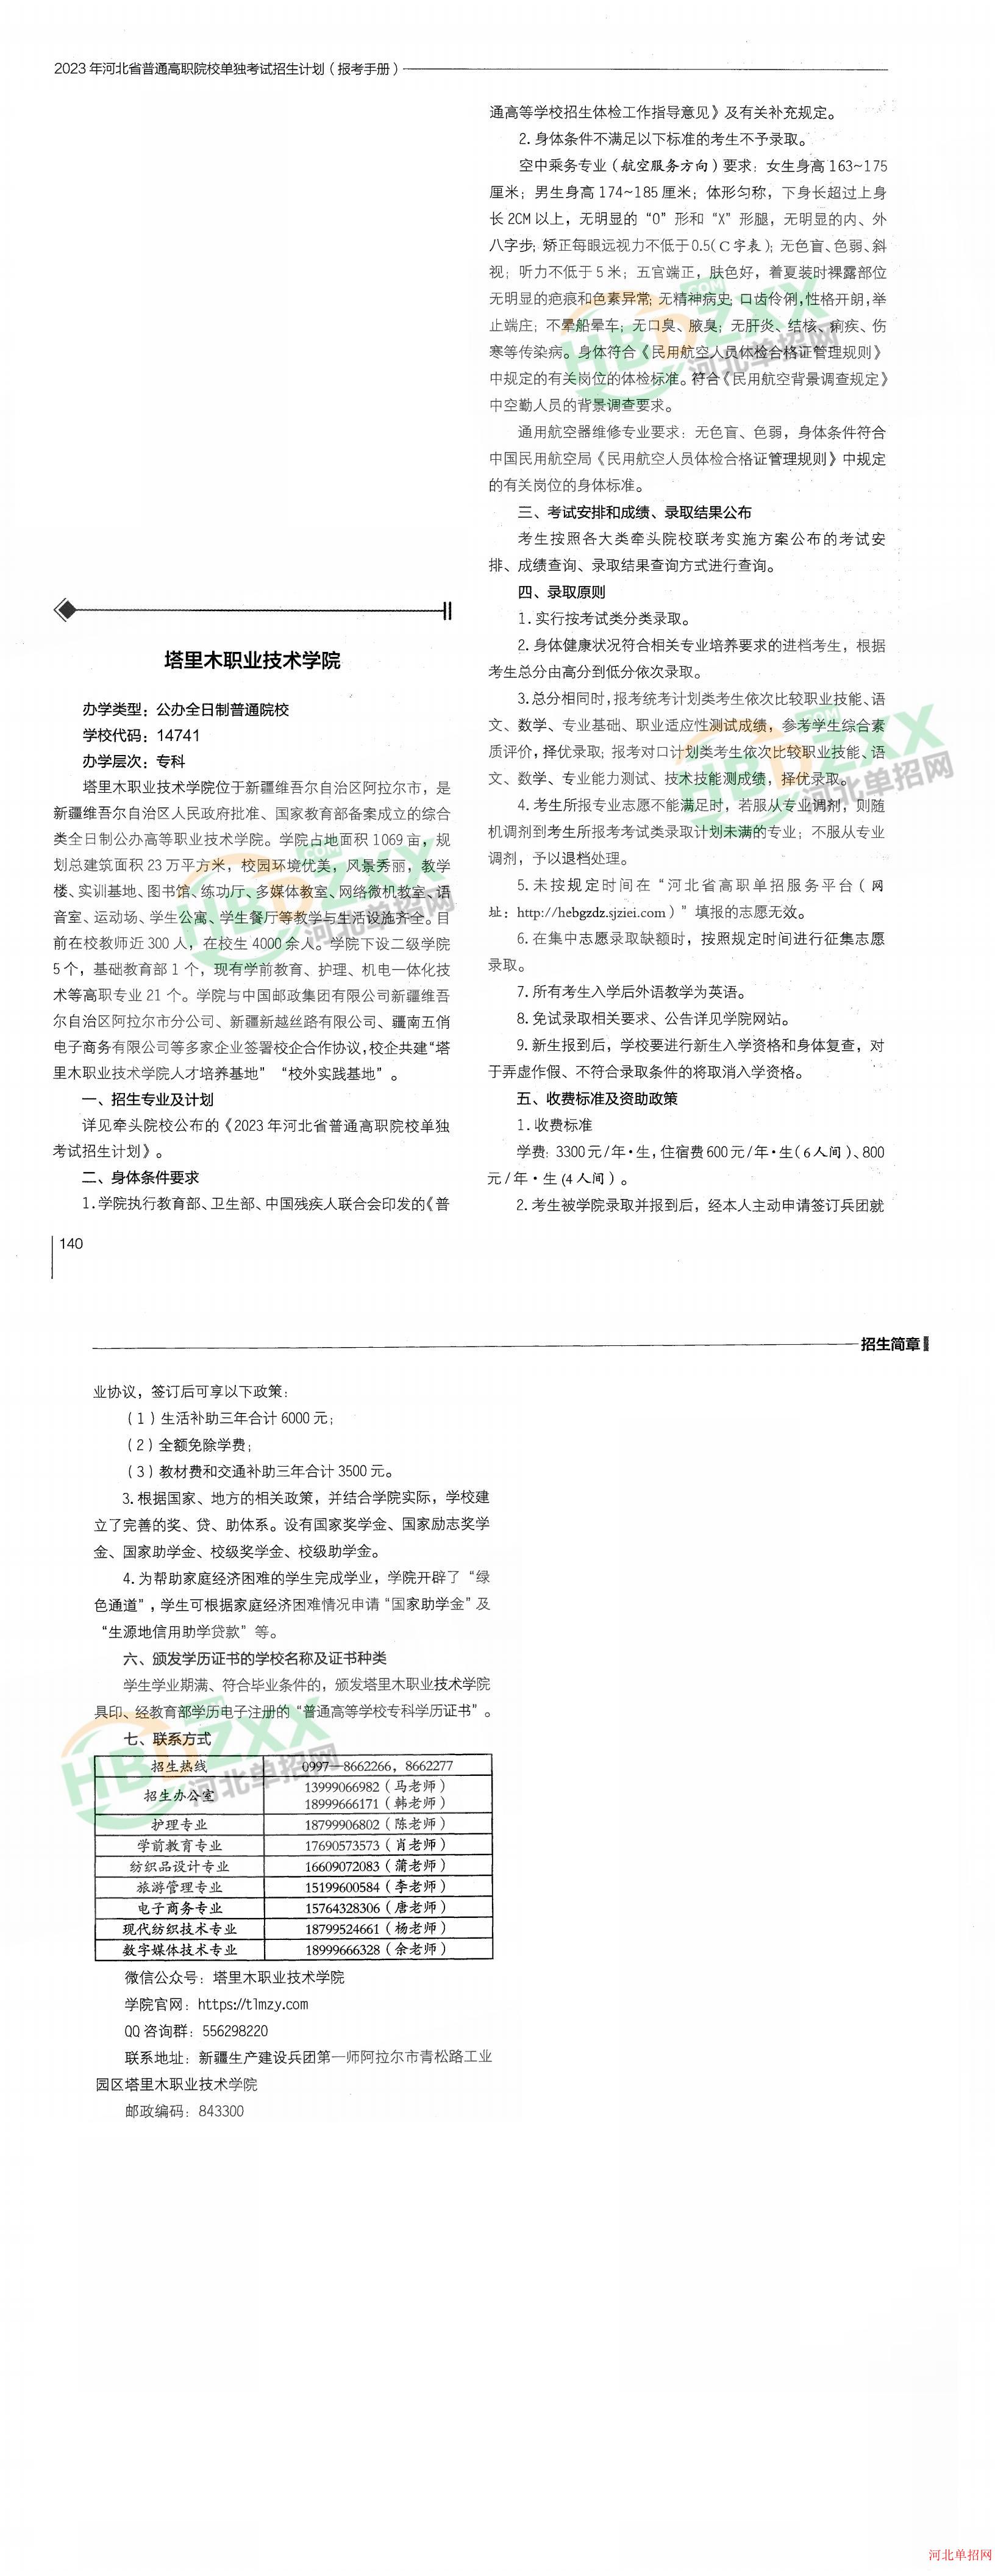 塔里木职业技术学院2023年河北省单招招生简章 图2